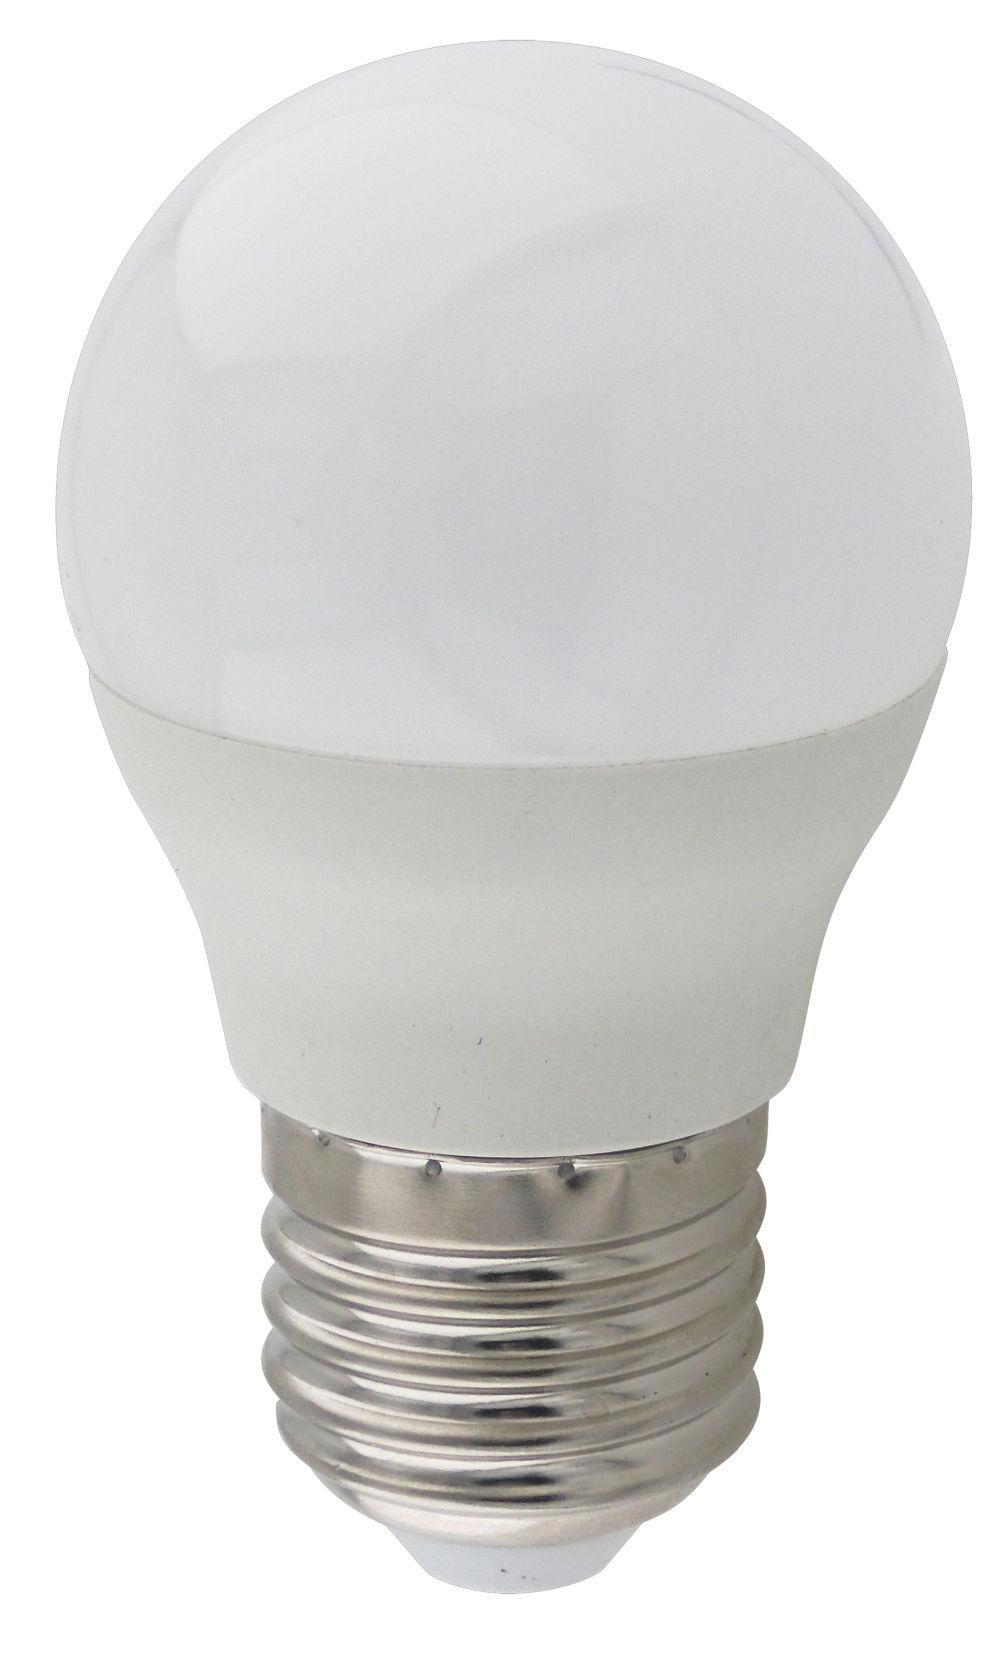 90121408 Лампа светодиодная K7QW80ELC Premium E27 220 В 8 Вт шар малый матовая 640 Лм теплый белый свет STLM-0112532 ECOLA